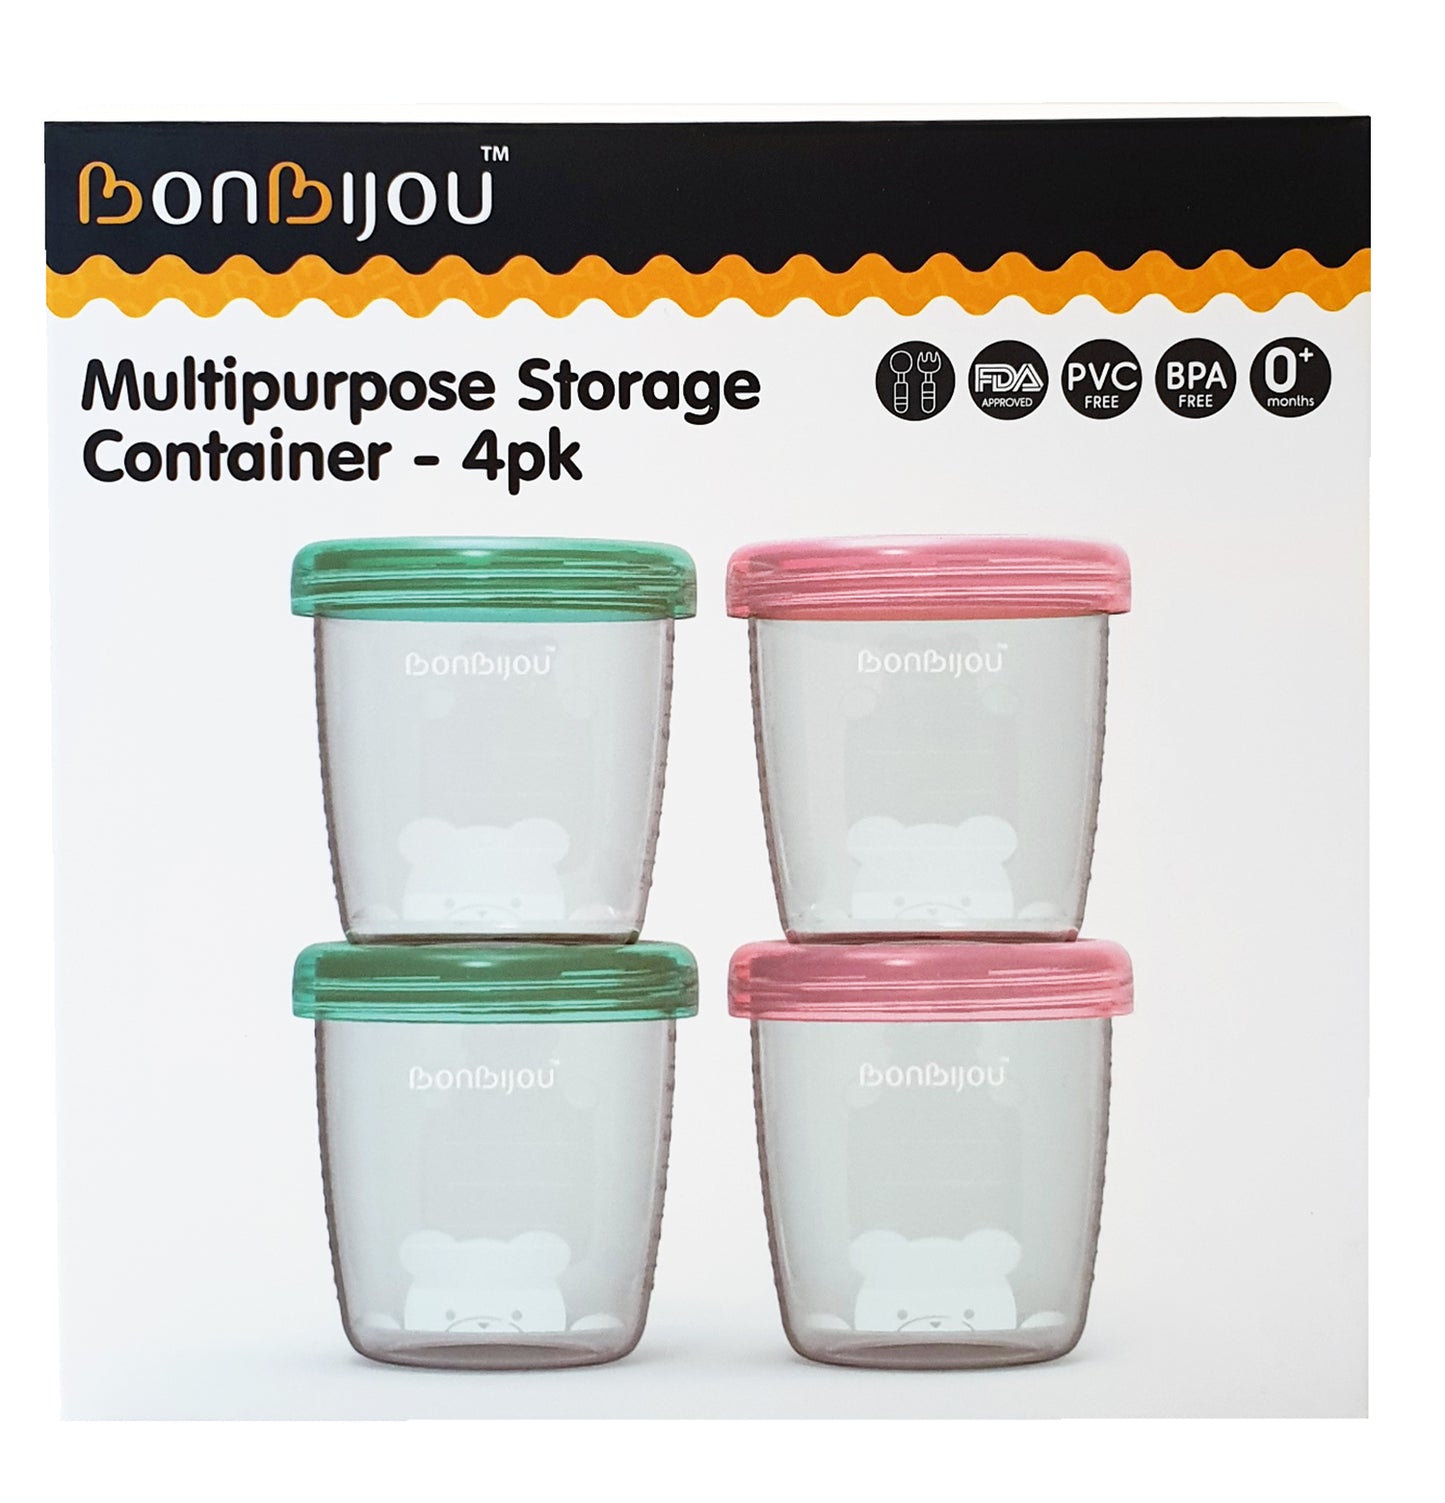 Multipurpose Storage Container - 4PK - Bonbijou